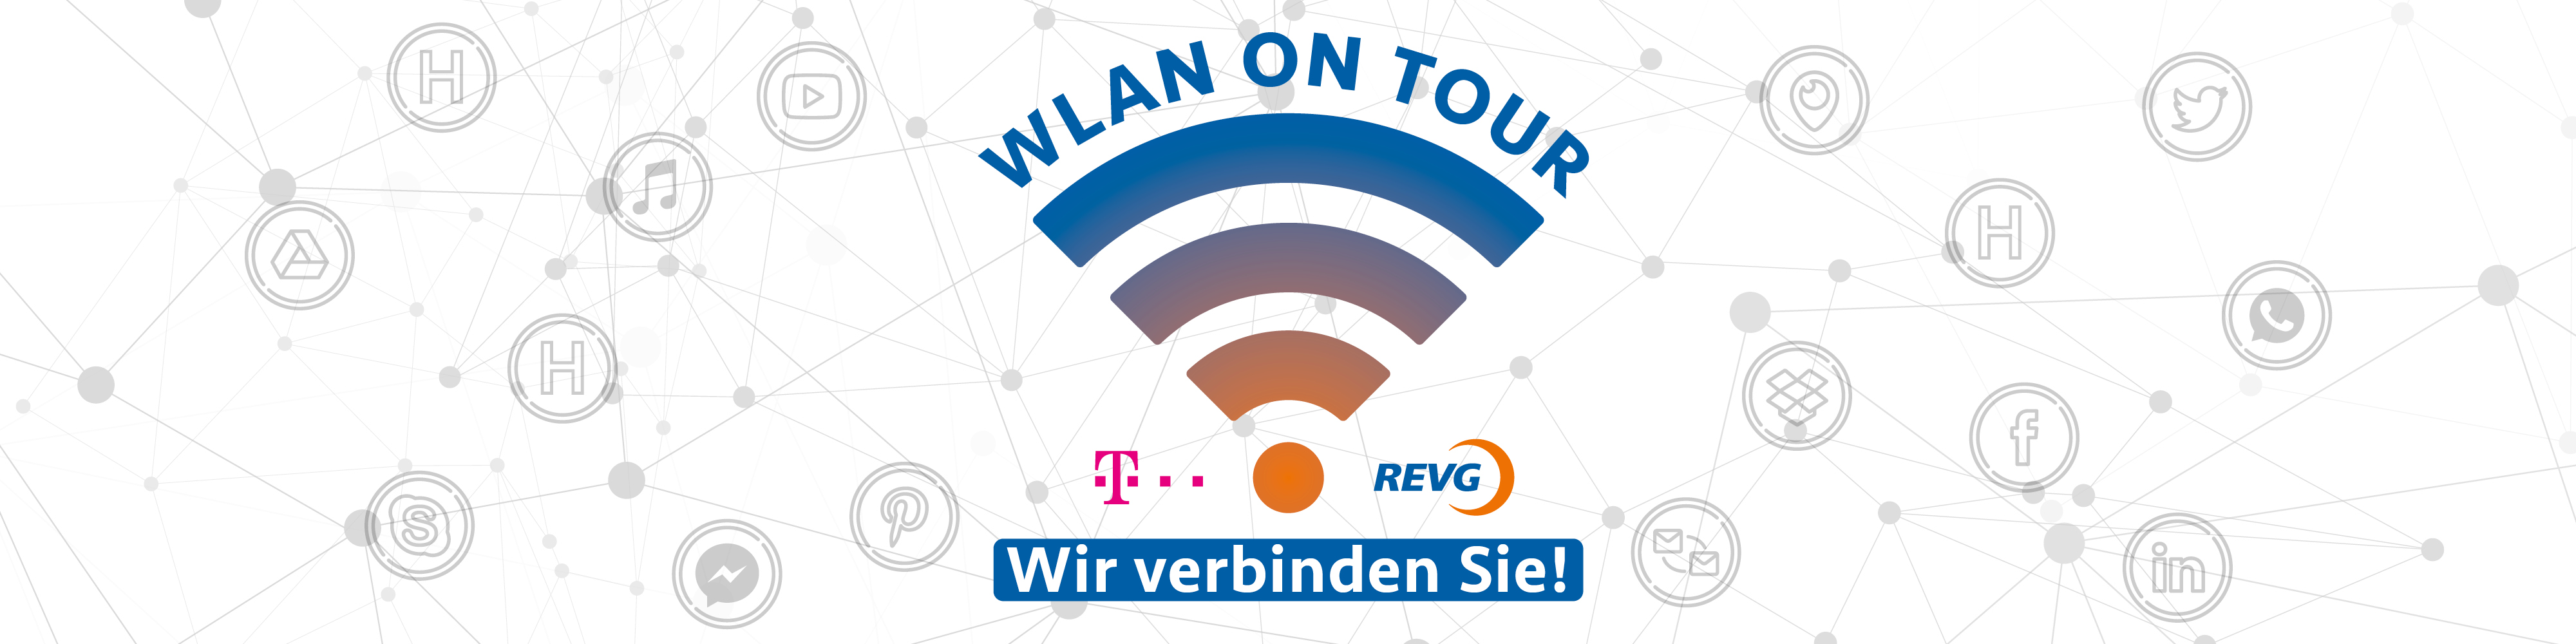 WLAN-Symbol mit Telekom- und REVG-Logo